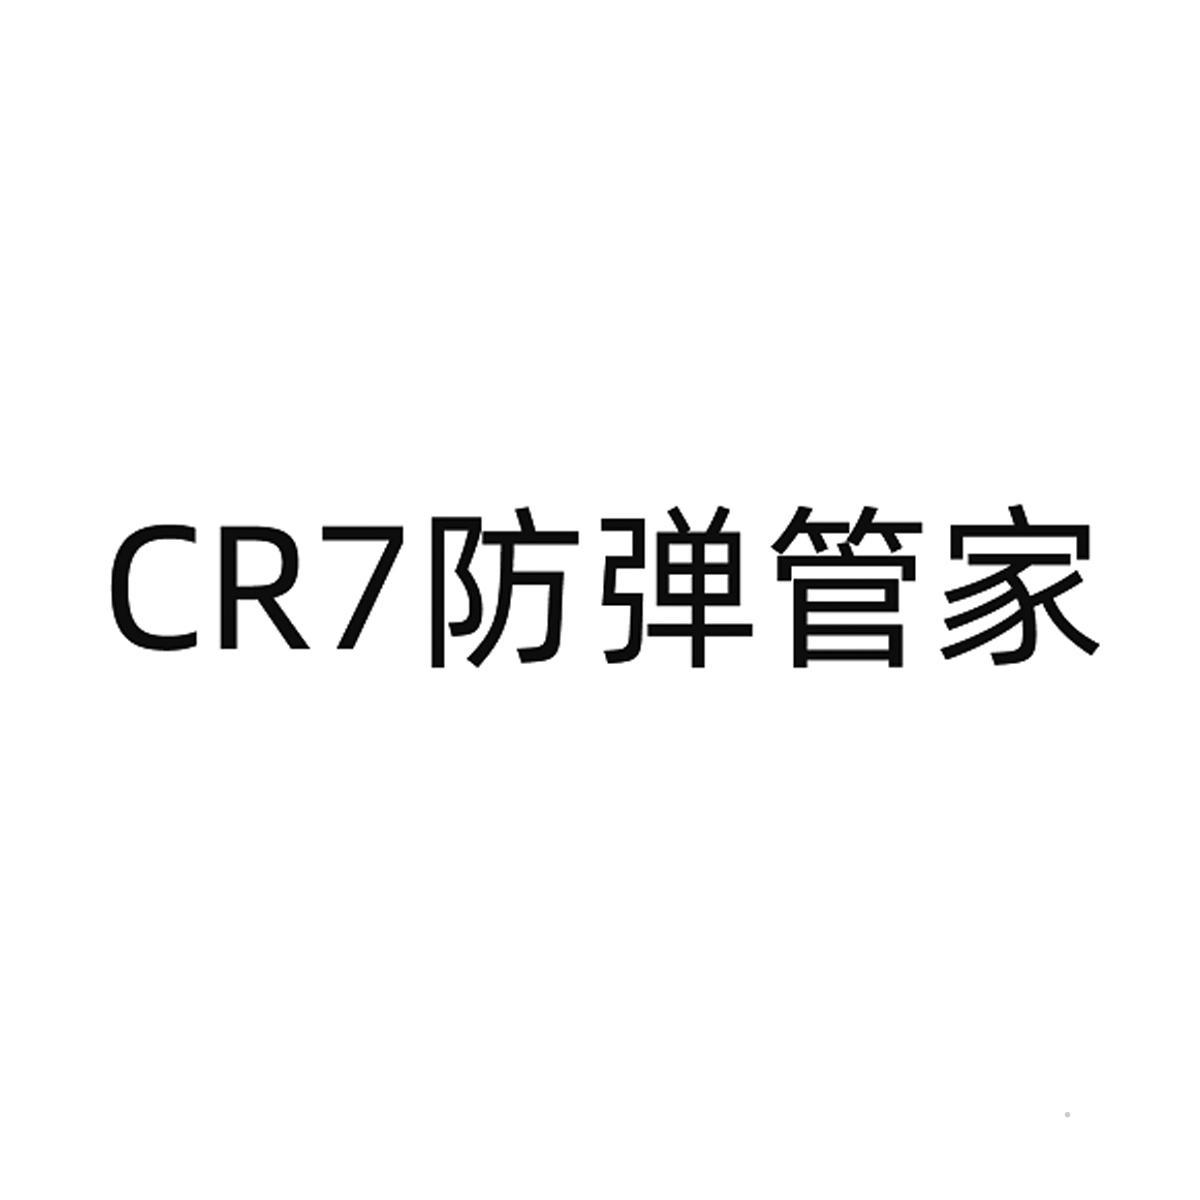 CR7防弹管家logo